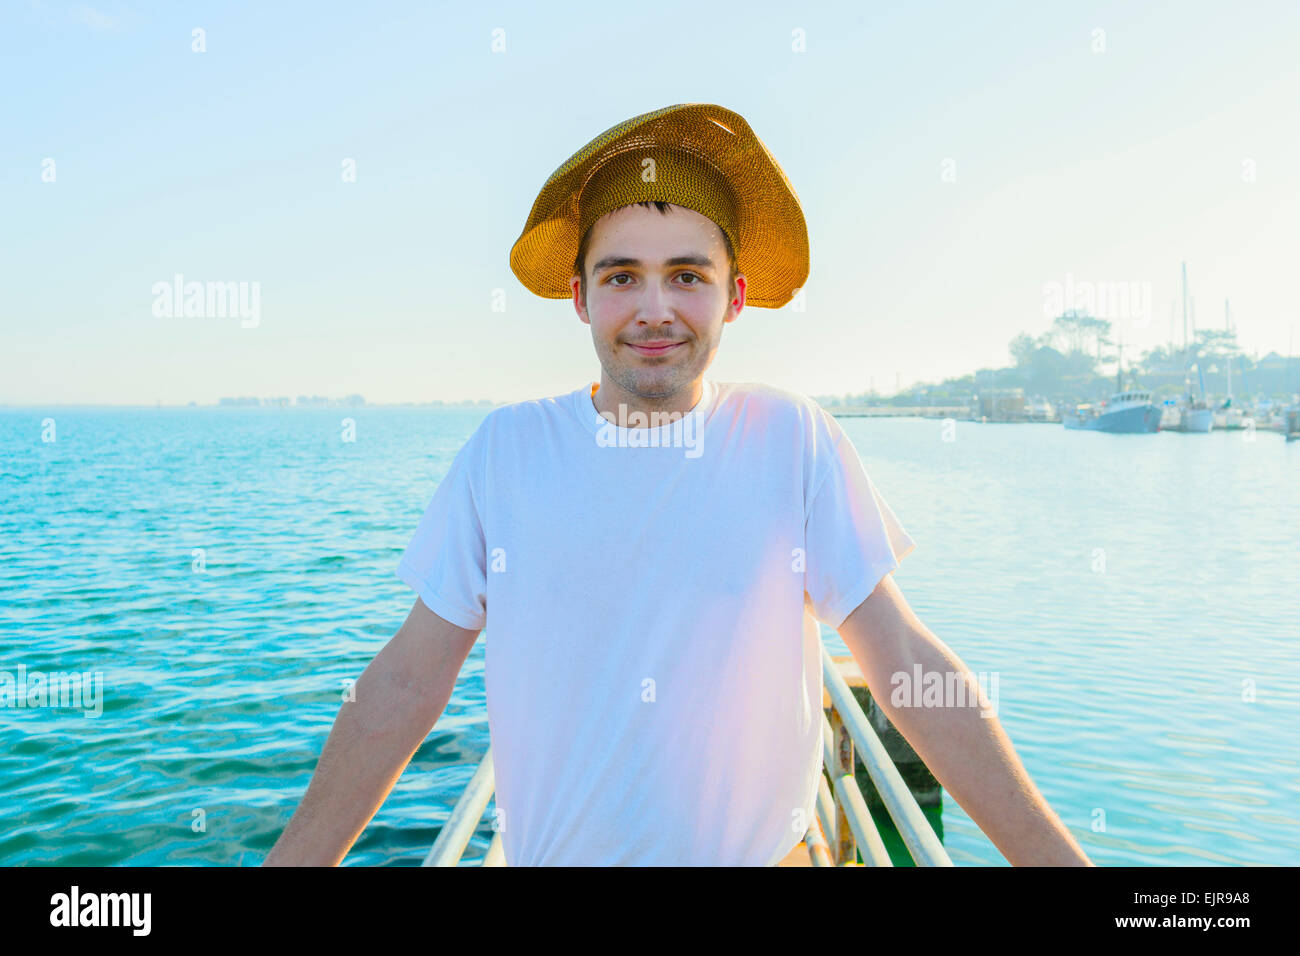 Caucasian man wearing sun hat on pier Stock Photo